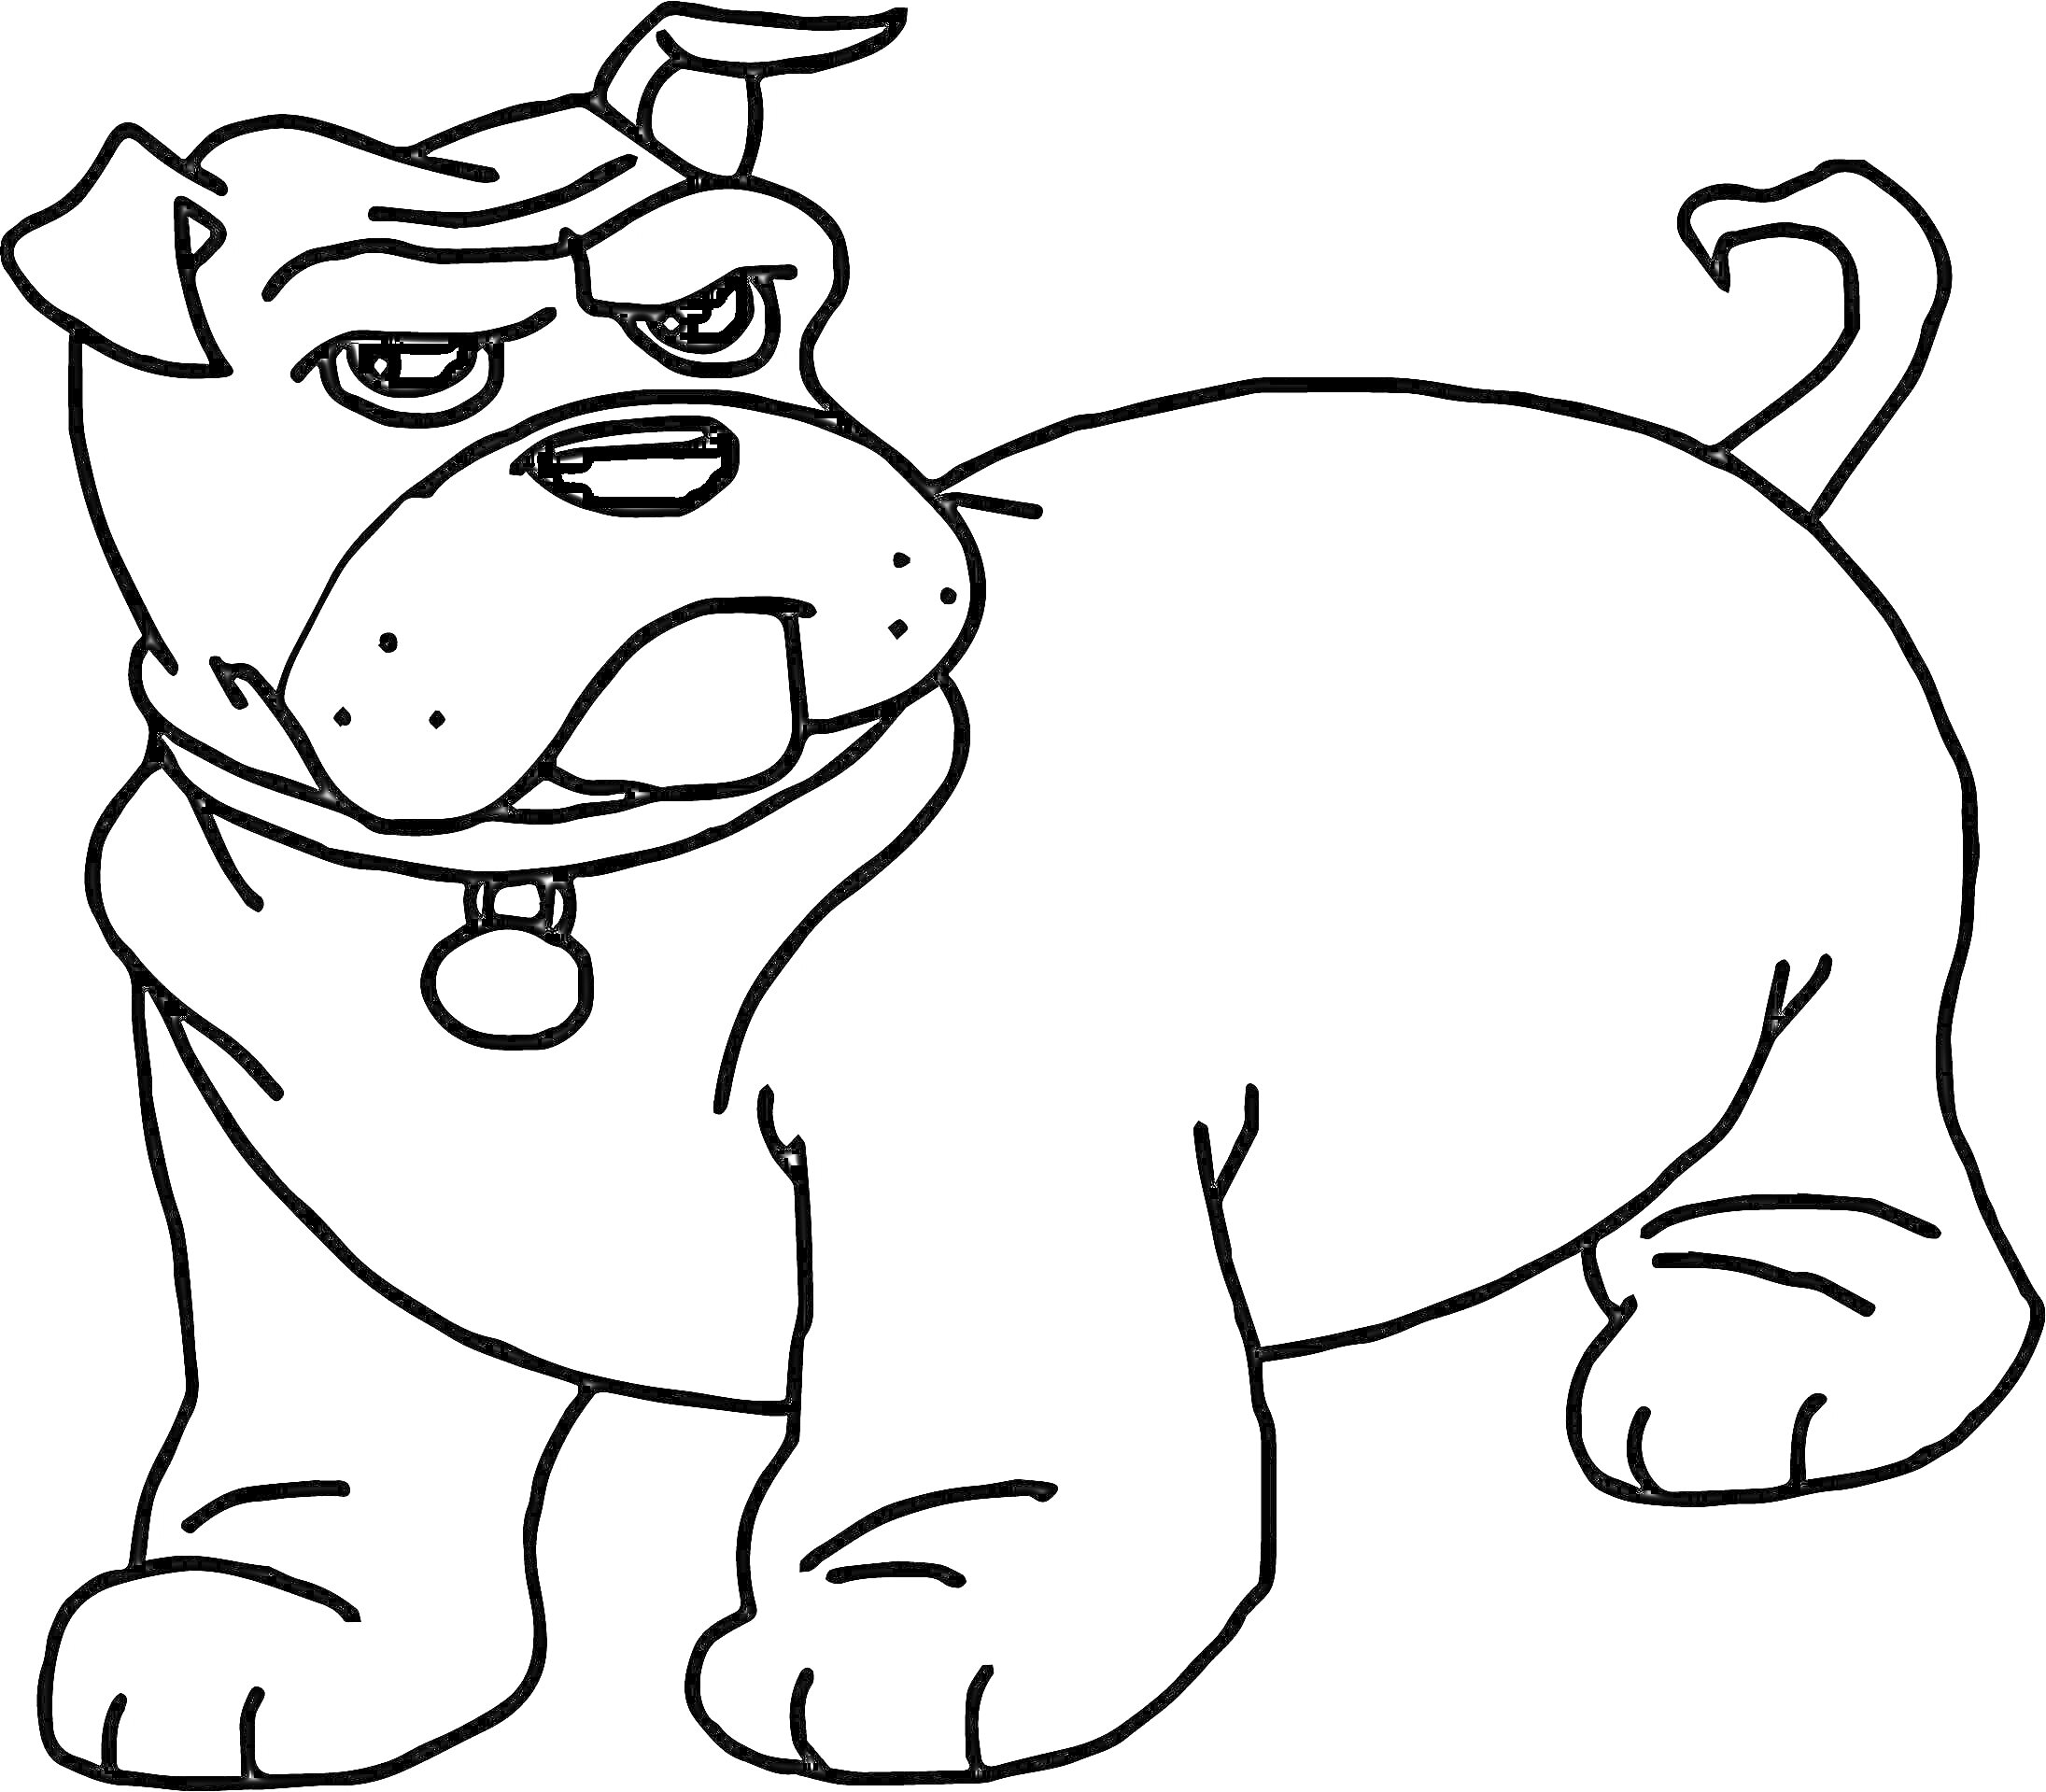 Раскраска Раскраска с изображением собаки по кличке Бен, которая стоит на лапах, с поднятым хвостиком и ошейником с медальоном